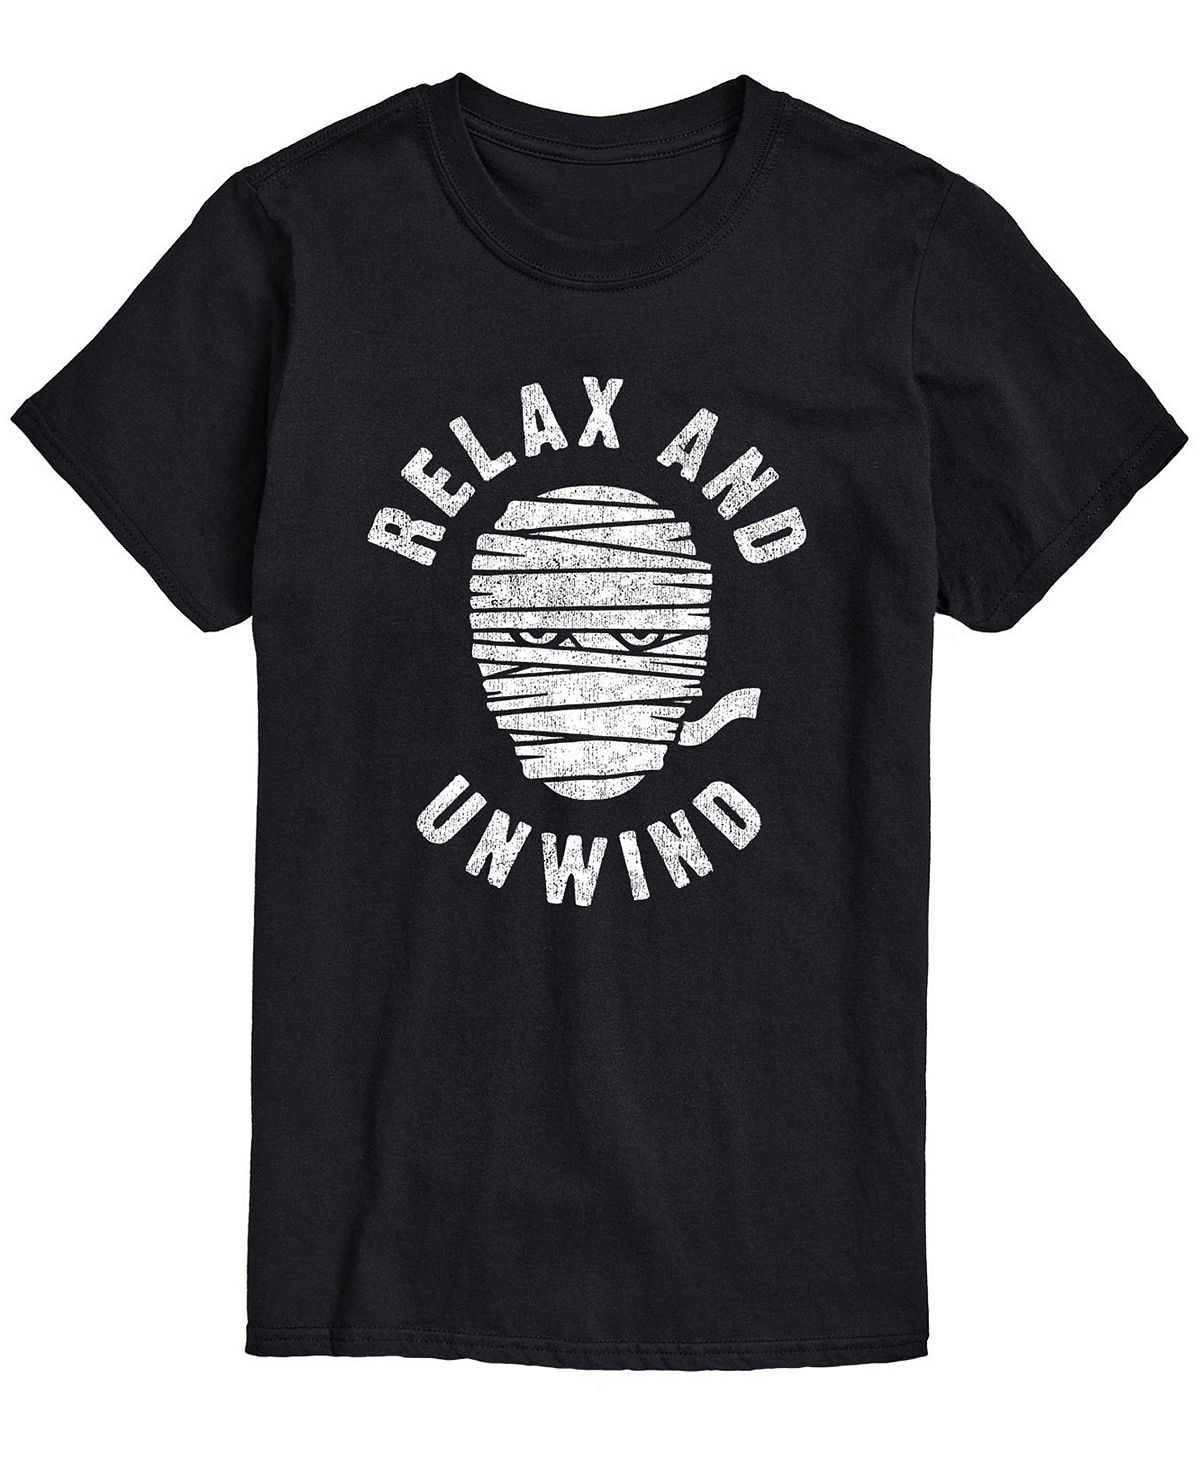 Мужская футболка классического кроя relax and unwind AIRWAVES, черный